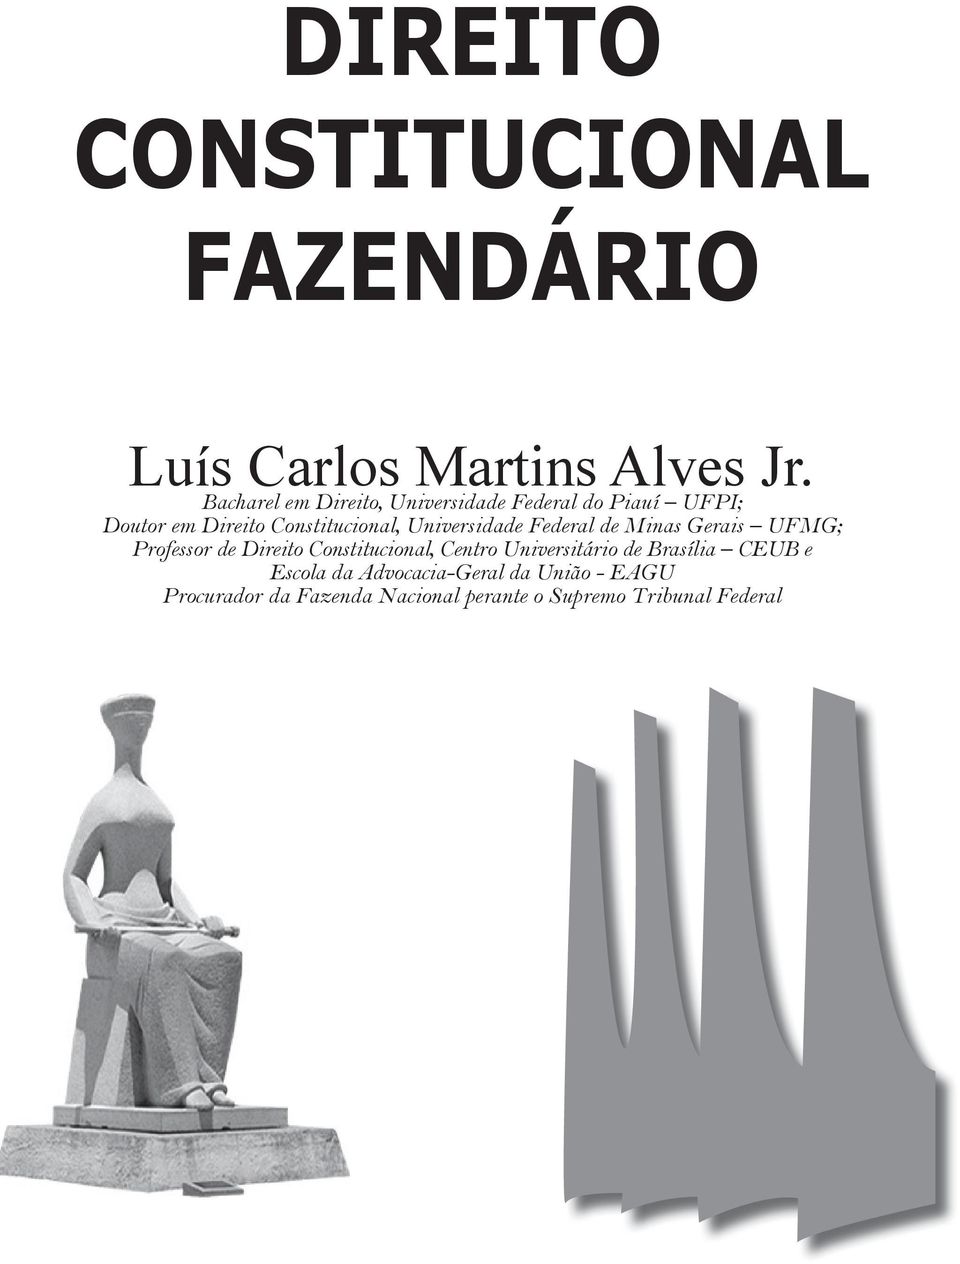 Universidade Federal de Minas Gerais UFMG; Professor de Direito Constitucional, Centro